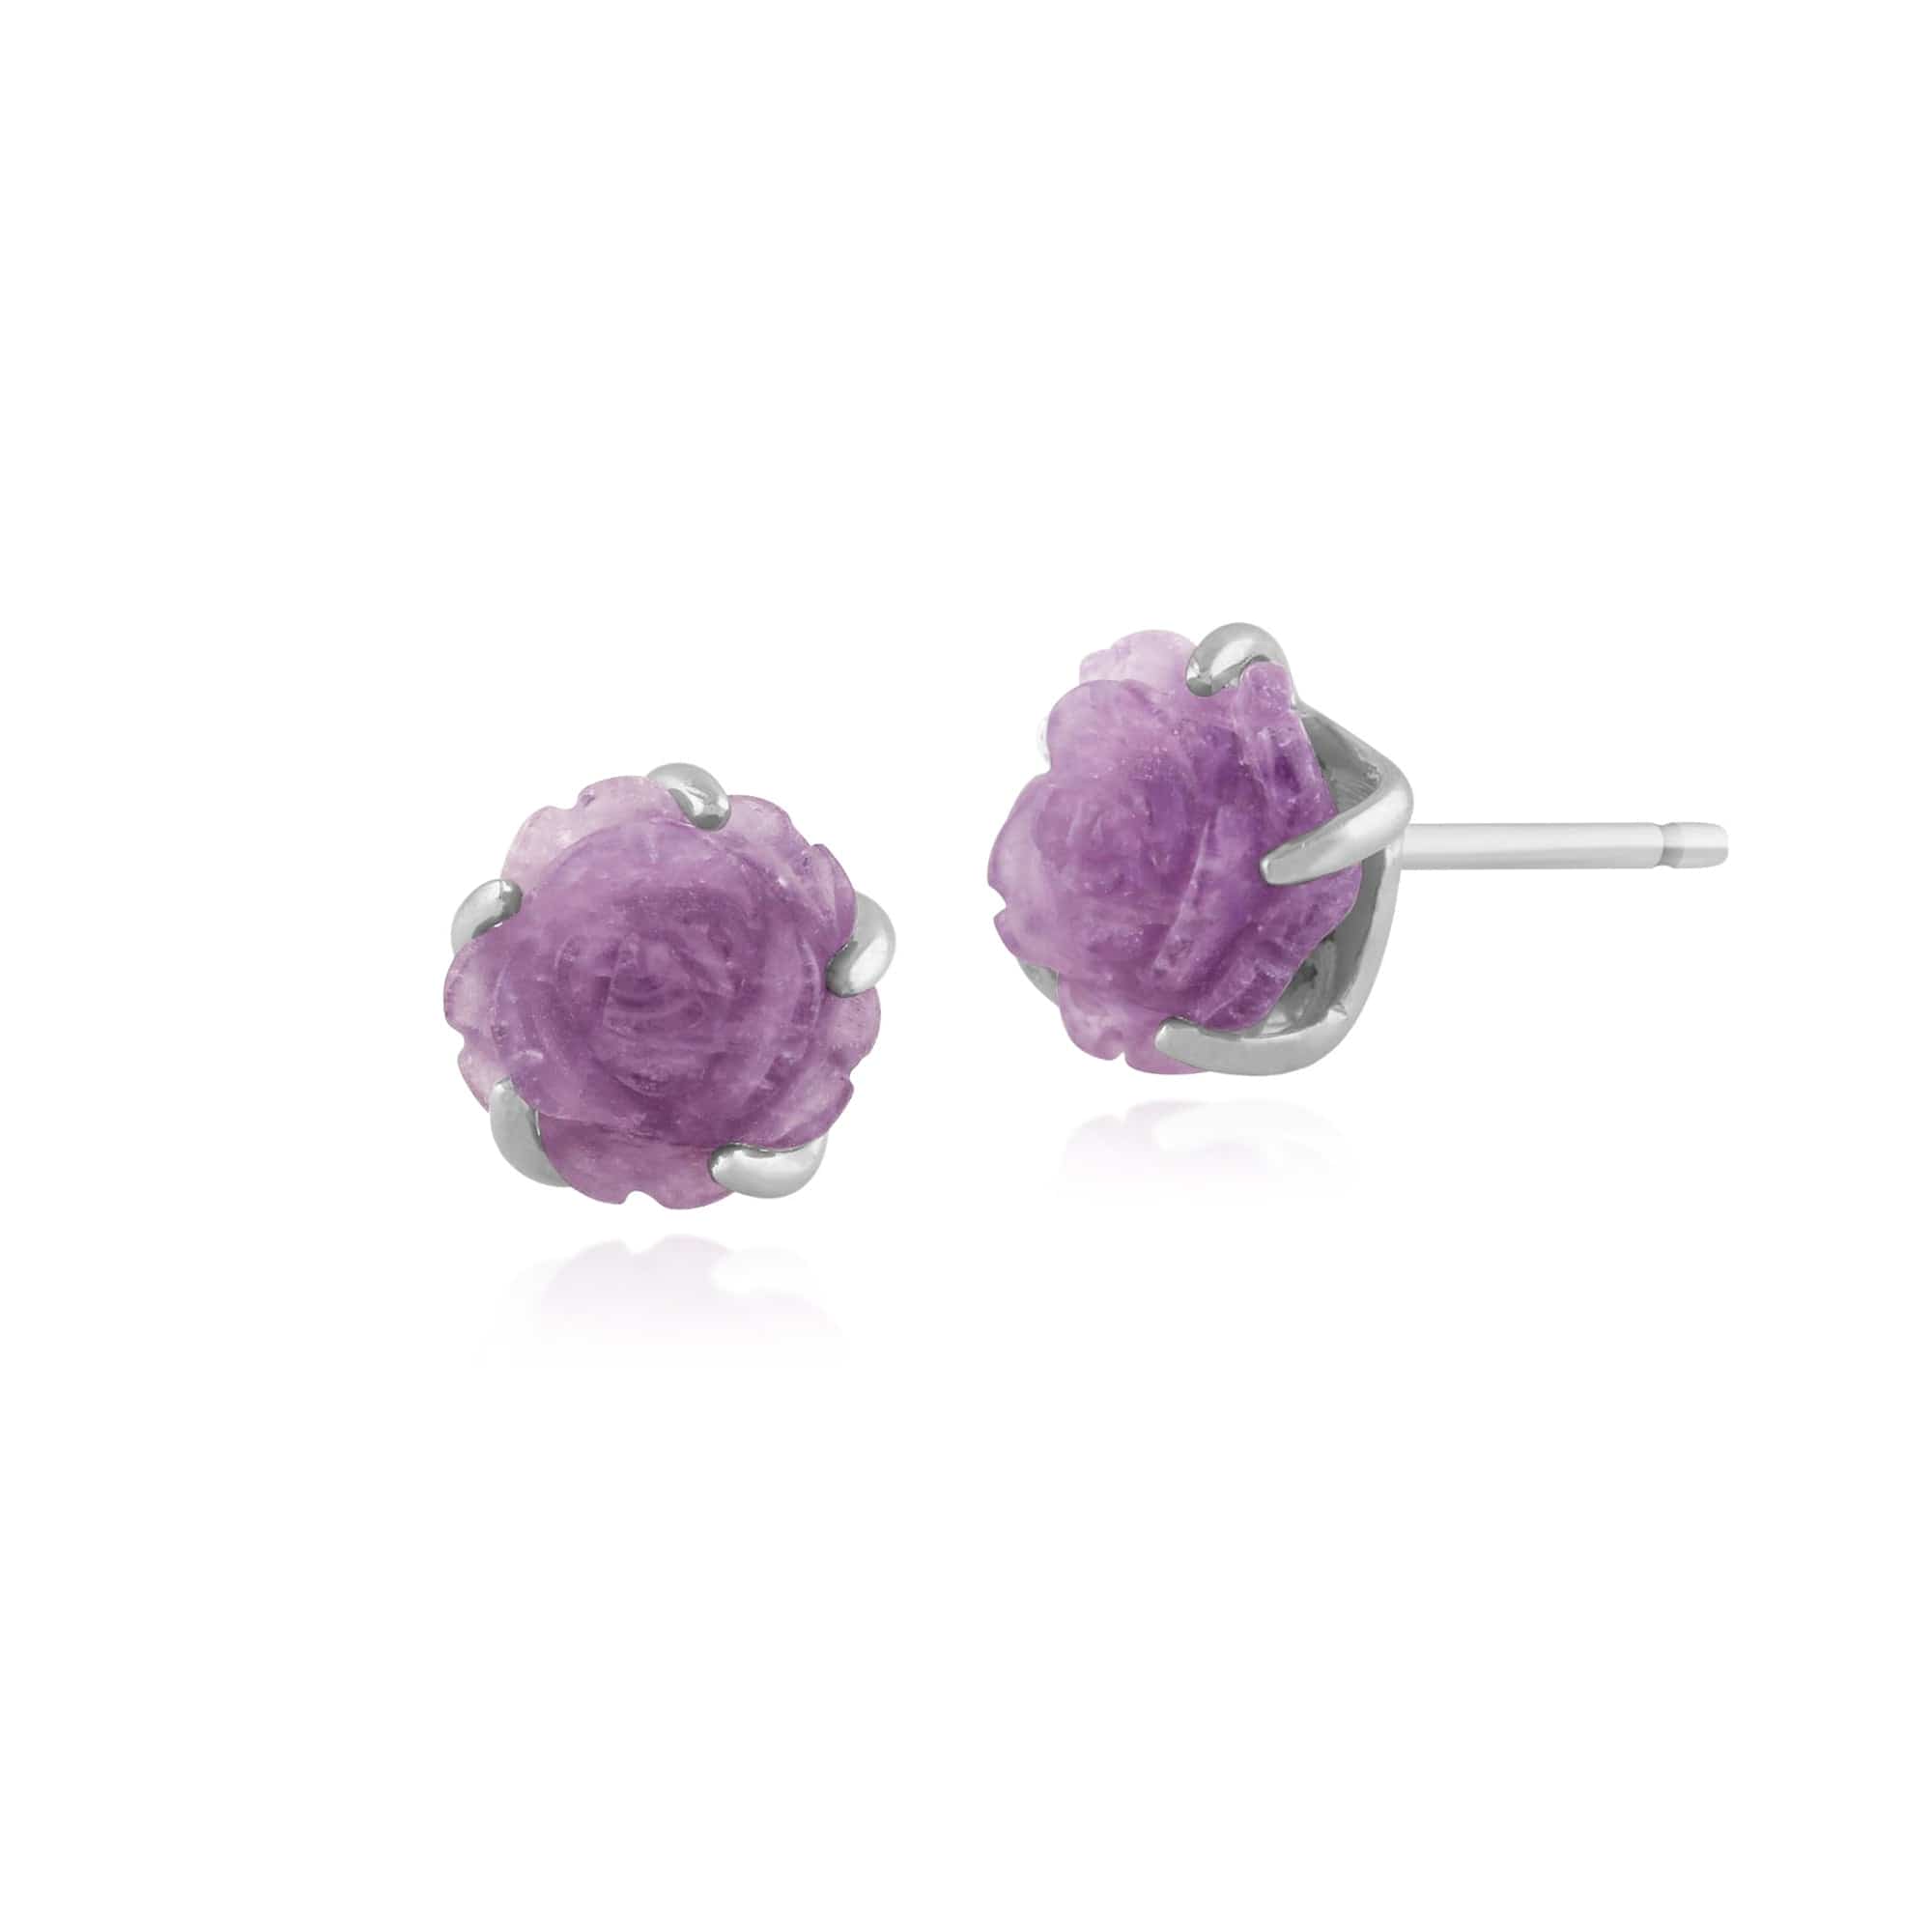 Floral Carved Amethyst Rose Stud Earrings in 925 Sterling Silver 8mm - Gemondo